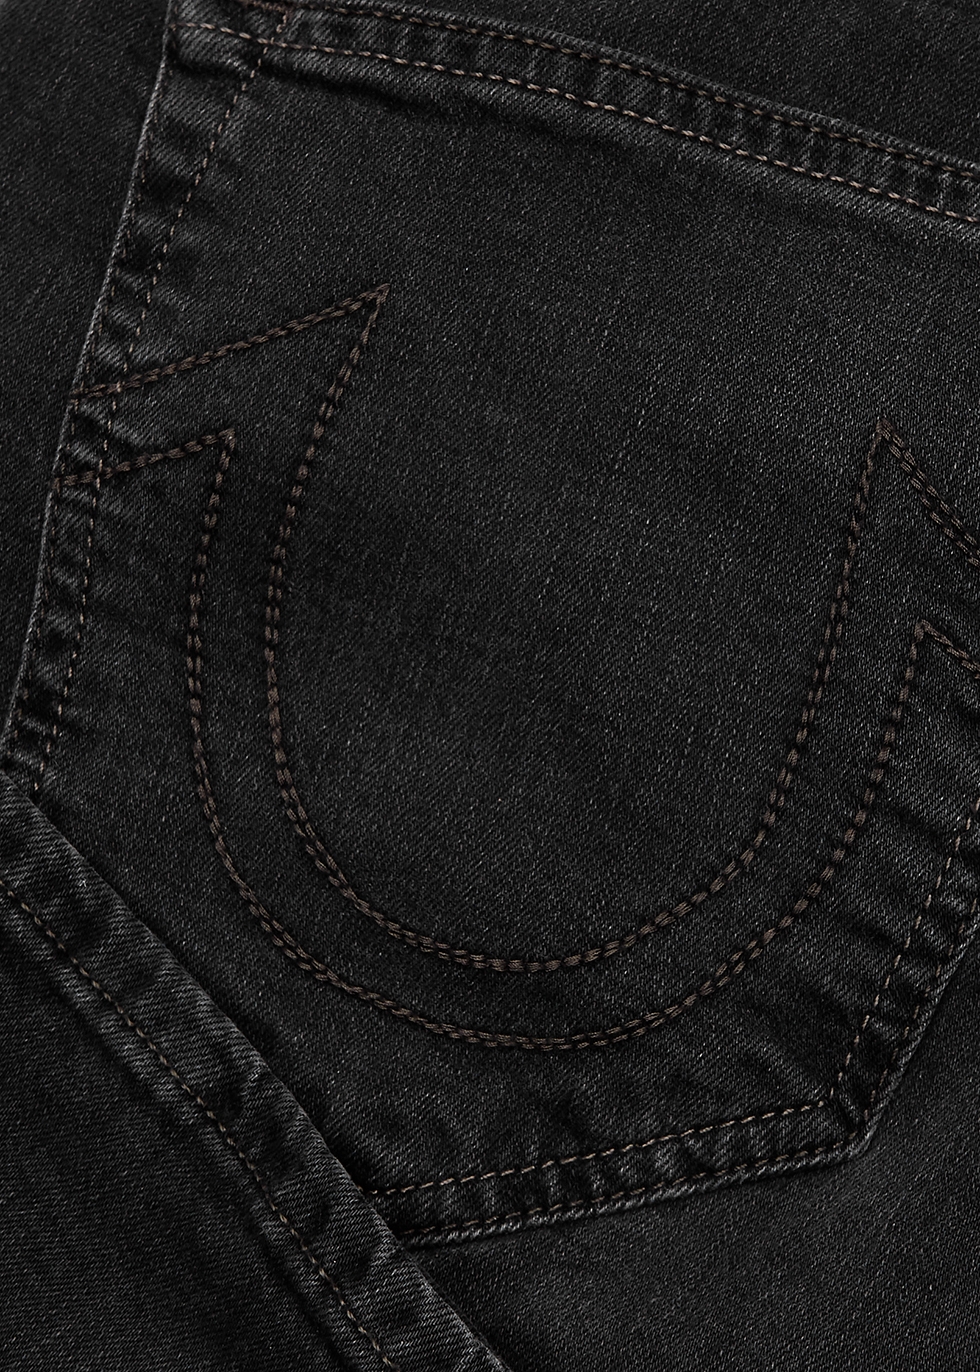 true religion black rocco jeans